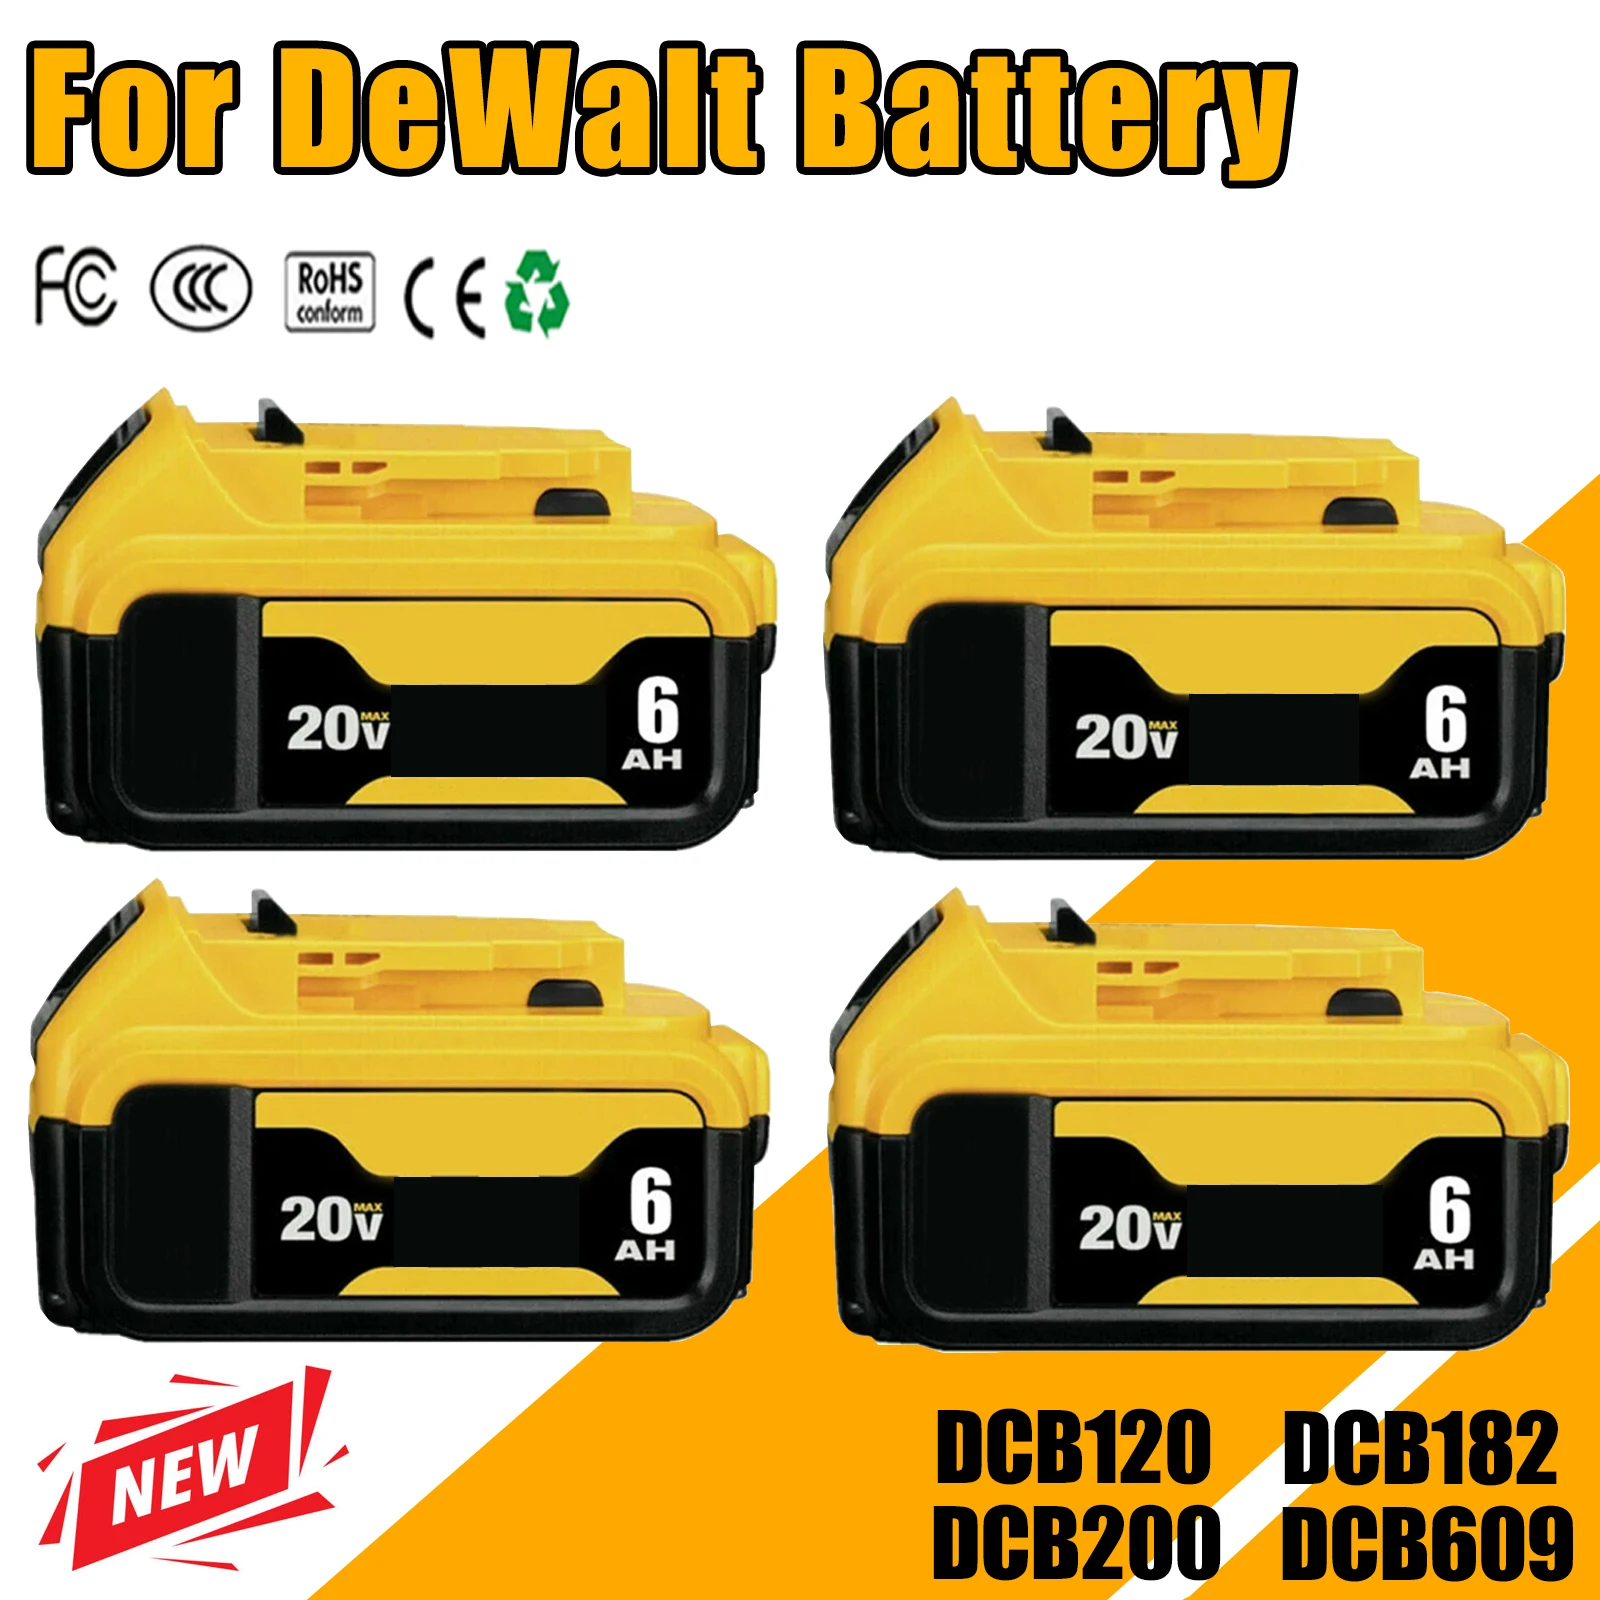 

4Packs 6000MAH For Dewalt DCB200 20V Replacement Battery Compatible with For Dewalt 20V Tools Battery LED Work Lights